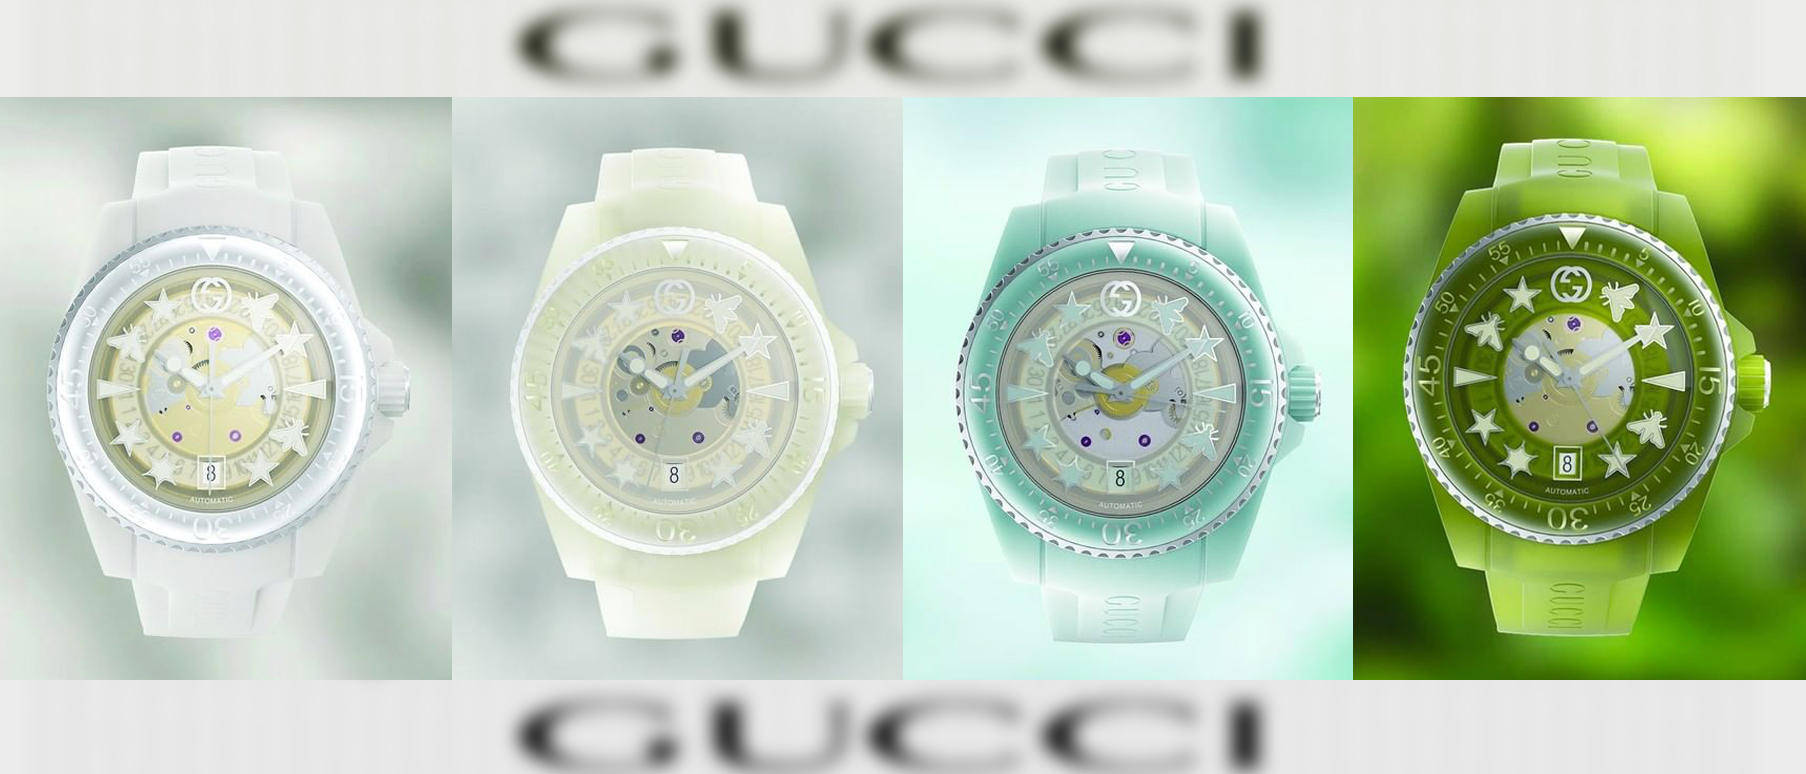 全新“Gucci Dive”腕表 | 可再生材料打造 定价1.36万